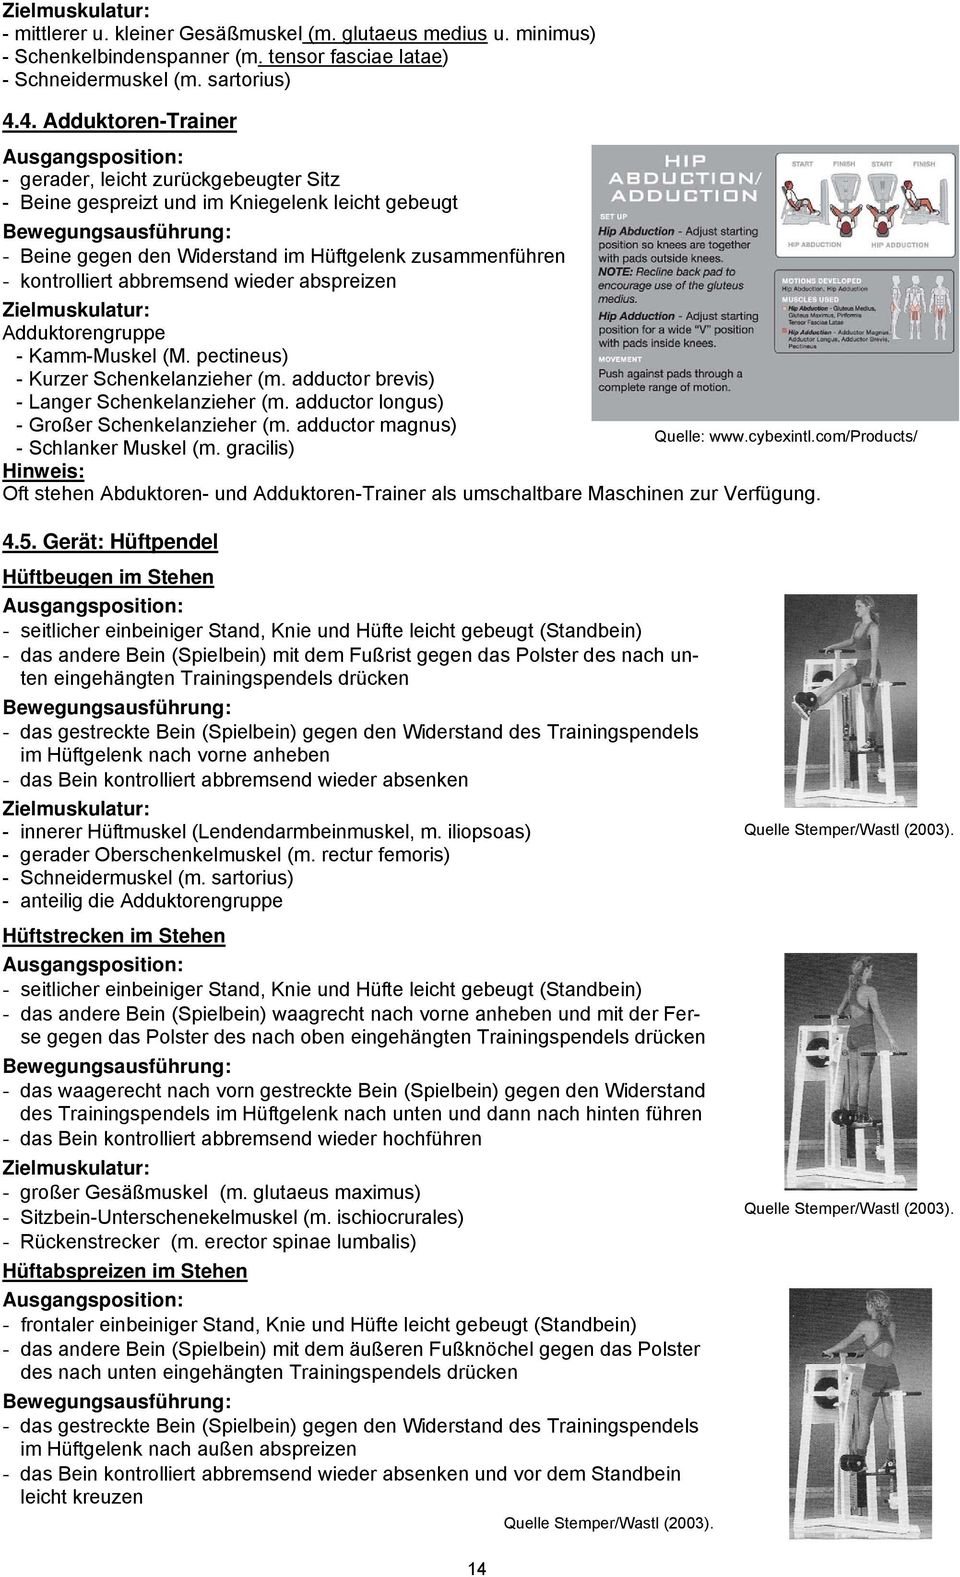 wieder abspreizen Zielmuskulatur: Adduktorengruppe - Kamm-Muskel (M. pectineus) - Kurzer Schenkelanzieher (m. adductor brevis) - Langer Schenkelanzieher (m.